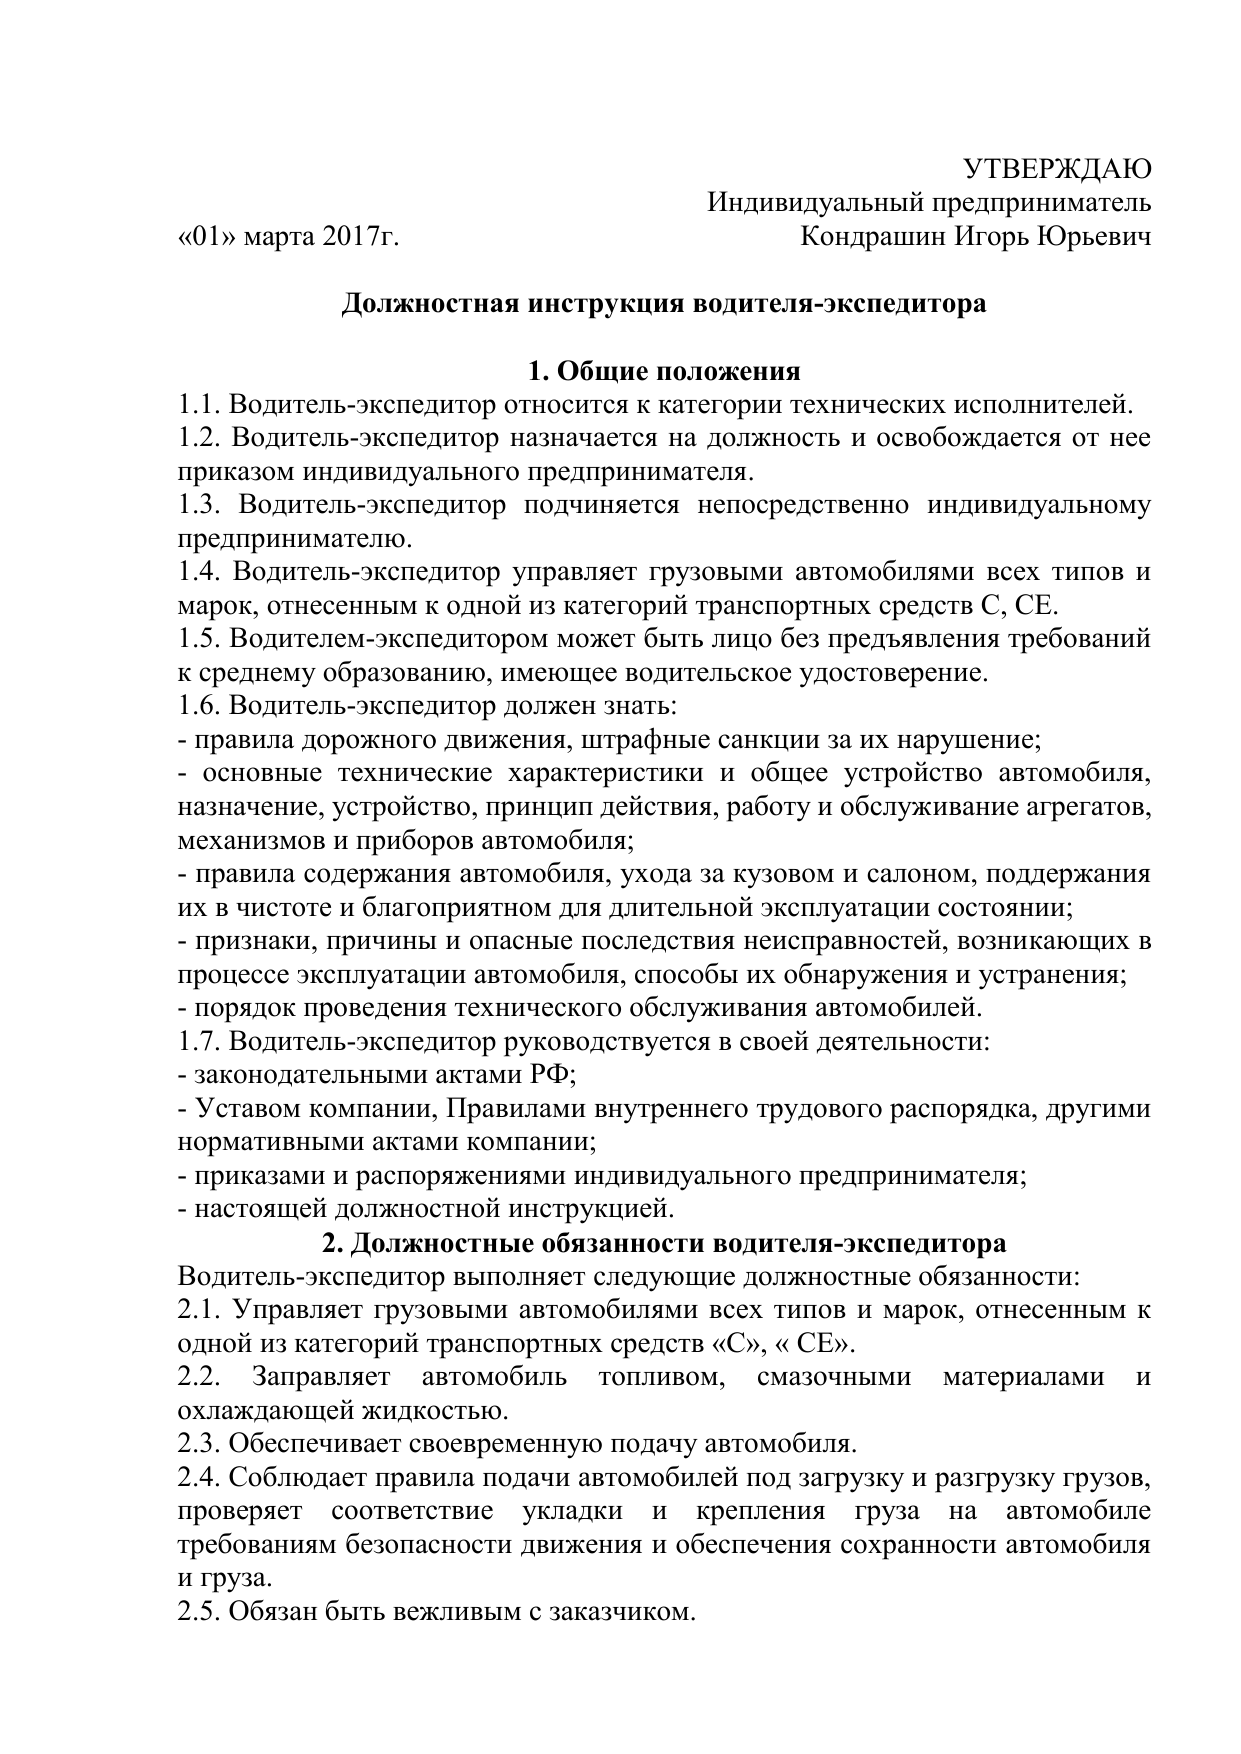 Водитель-экспедитор: обязанности. должностная инструкция водителя-экспедитора :: businessman.ru